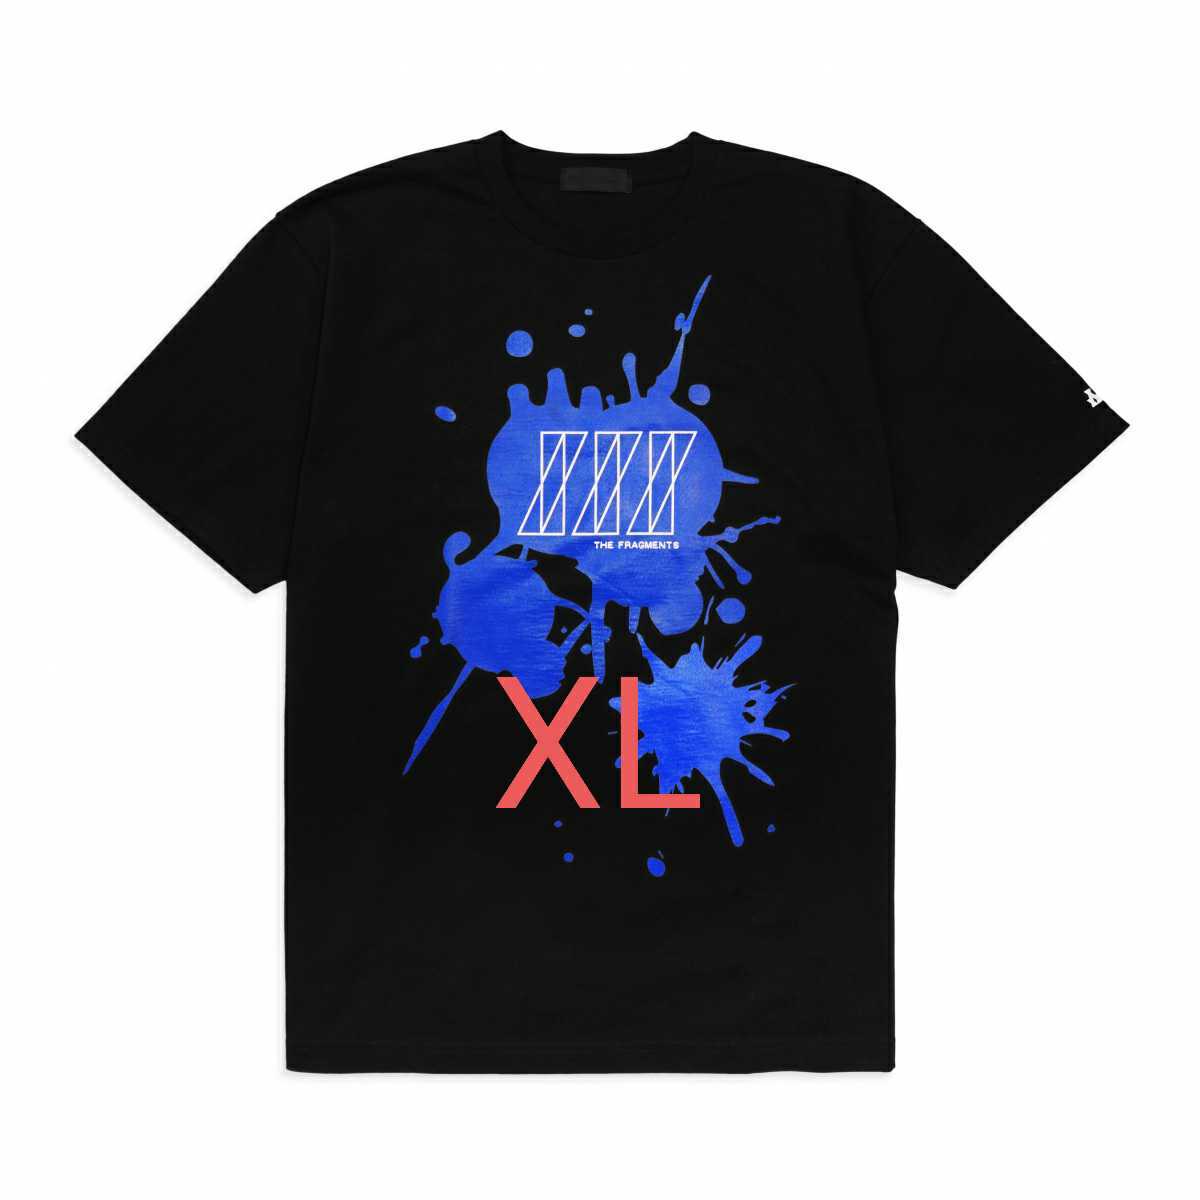 【2022秋冬新作】 XLサイズ god selection XXX fragment design 7周年 T-shirt Tシャツ tee black ブラック box logo ゴッドセレクション 文字、ロゴ